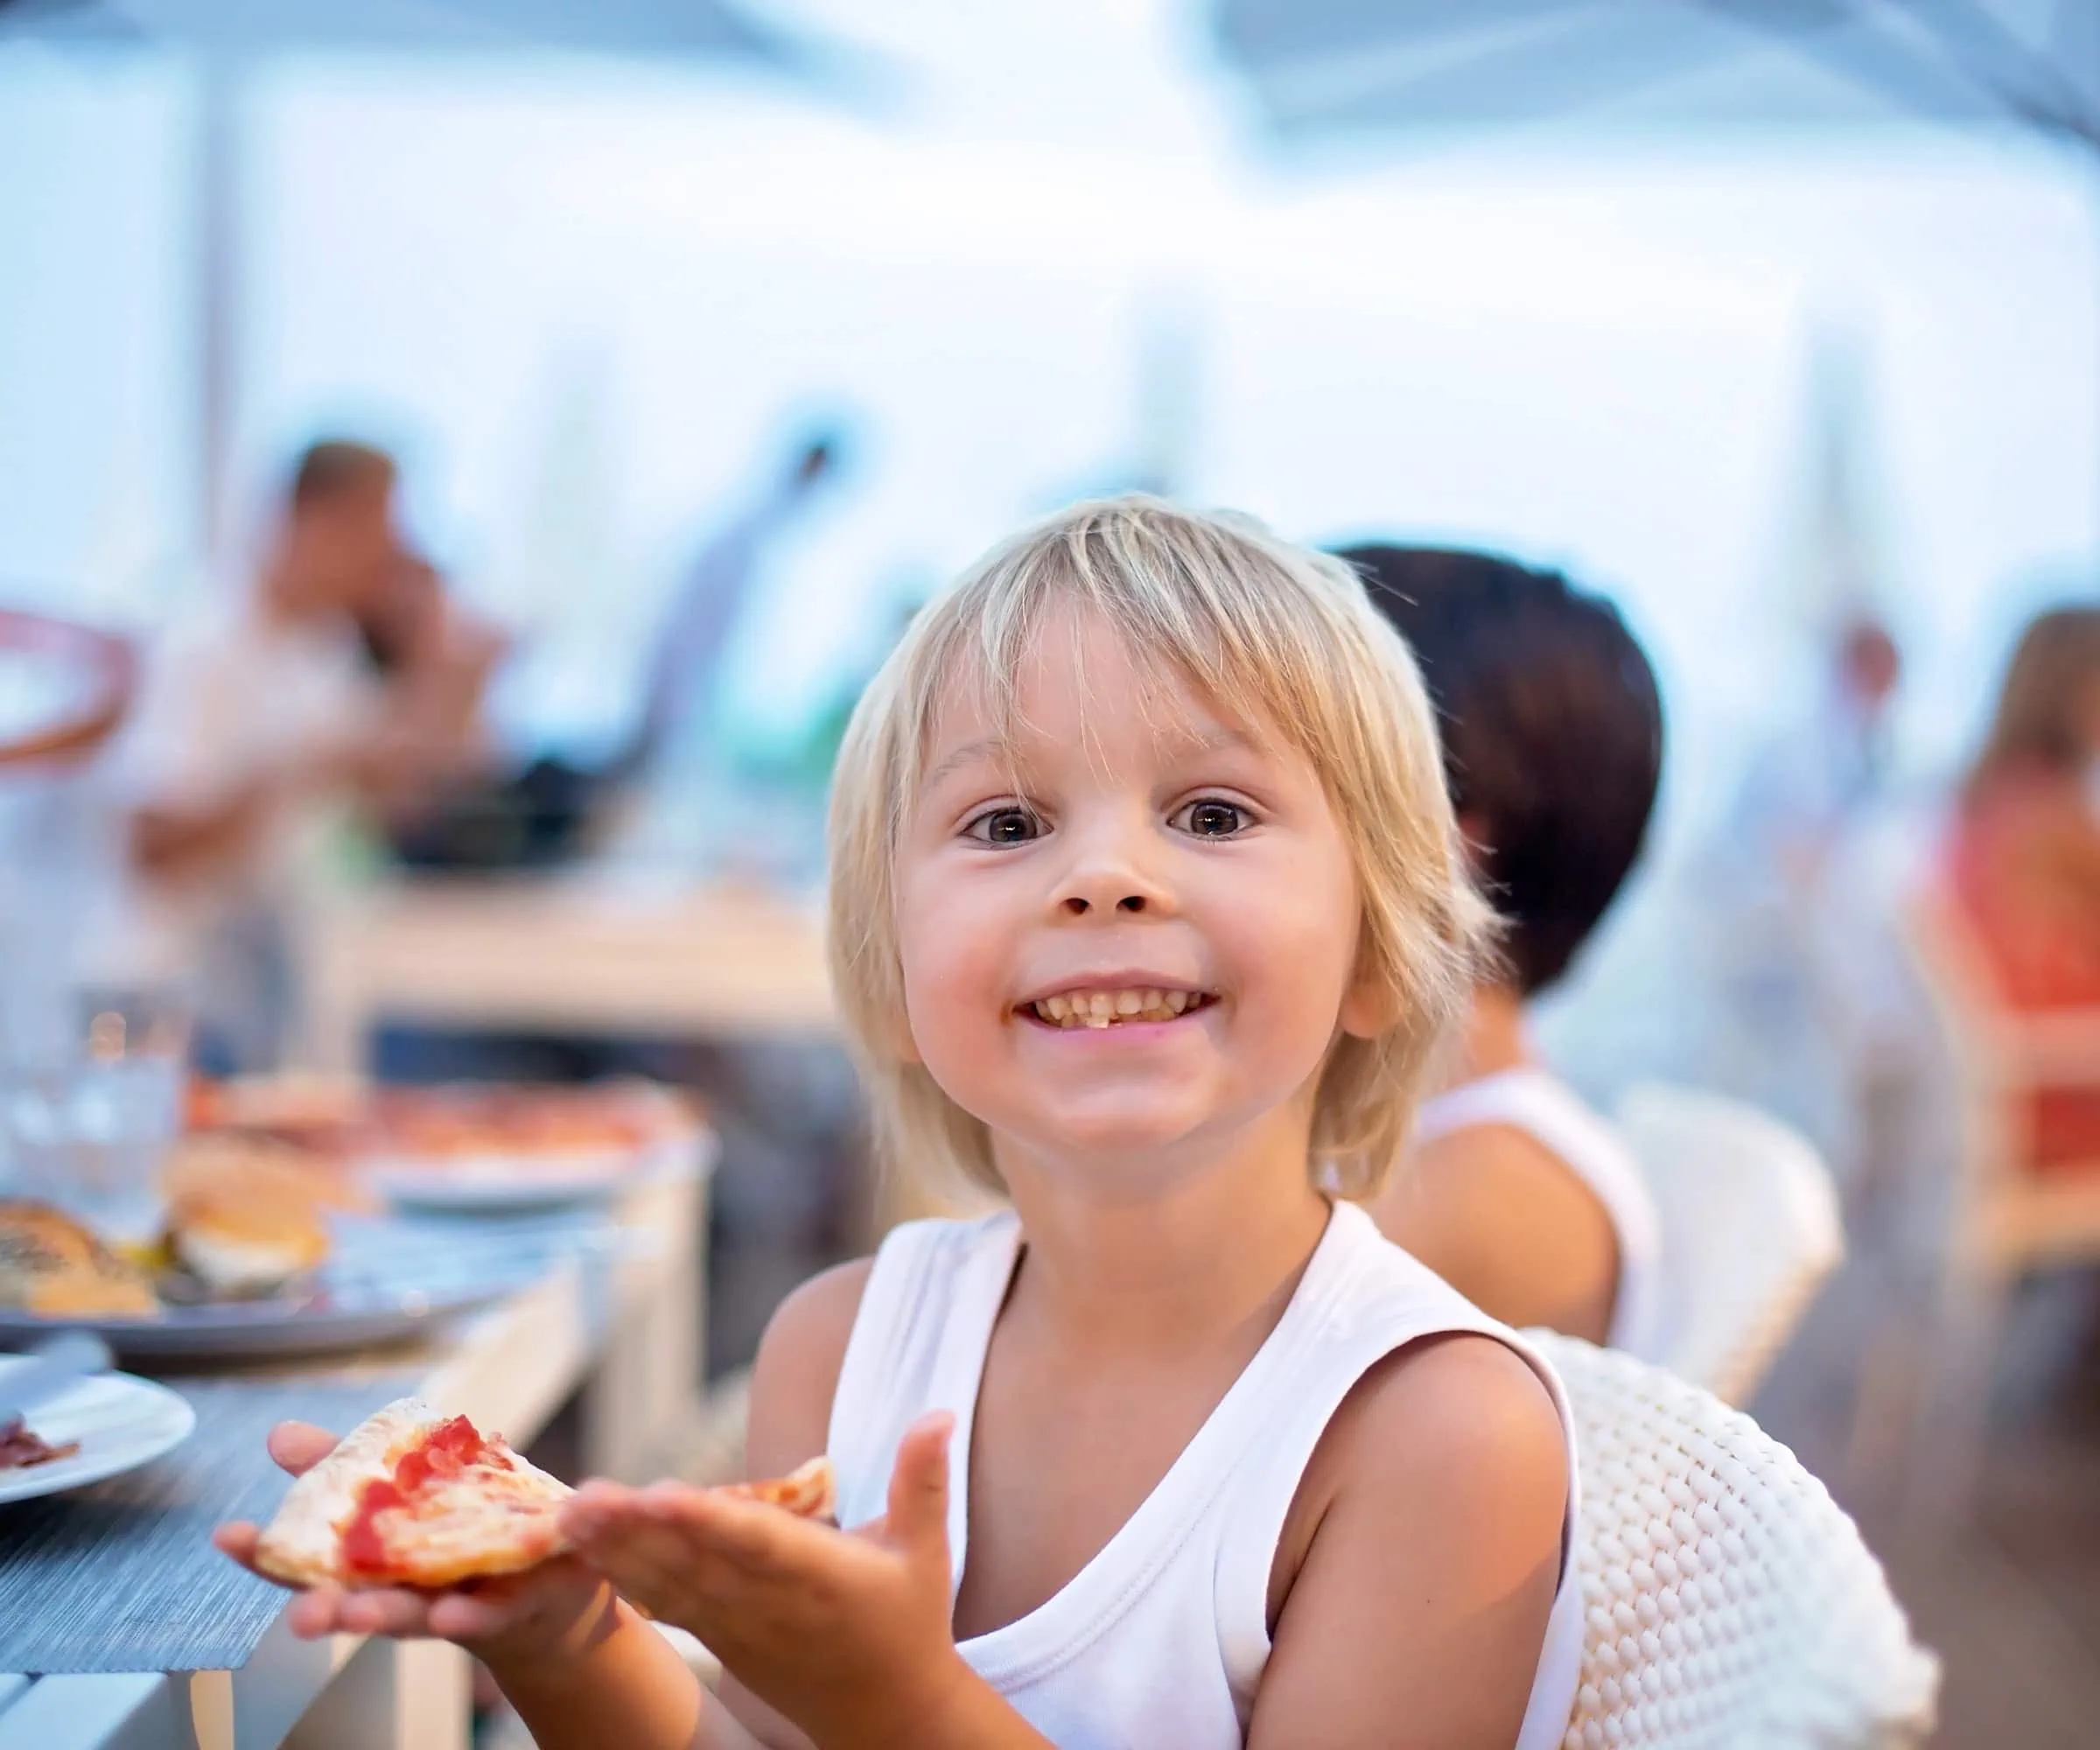 Kinderfreundliche Gastronomie in München – Tipps von Chris Lehner, worauf man beim Essengehen mit Kindern achten sollte // HIMBEER